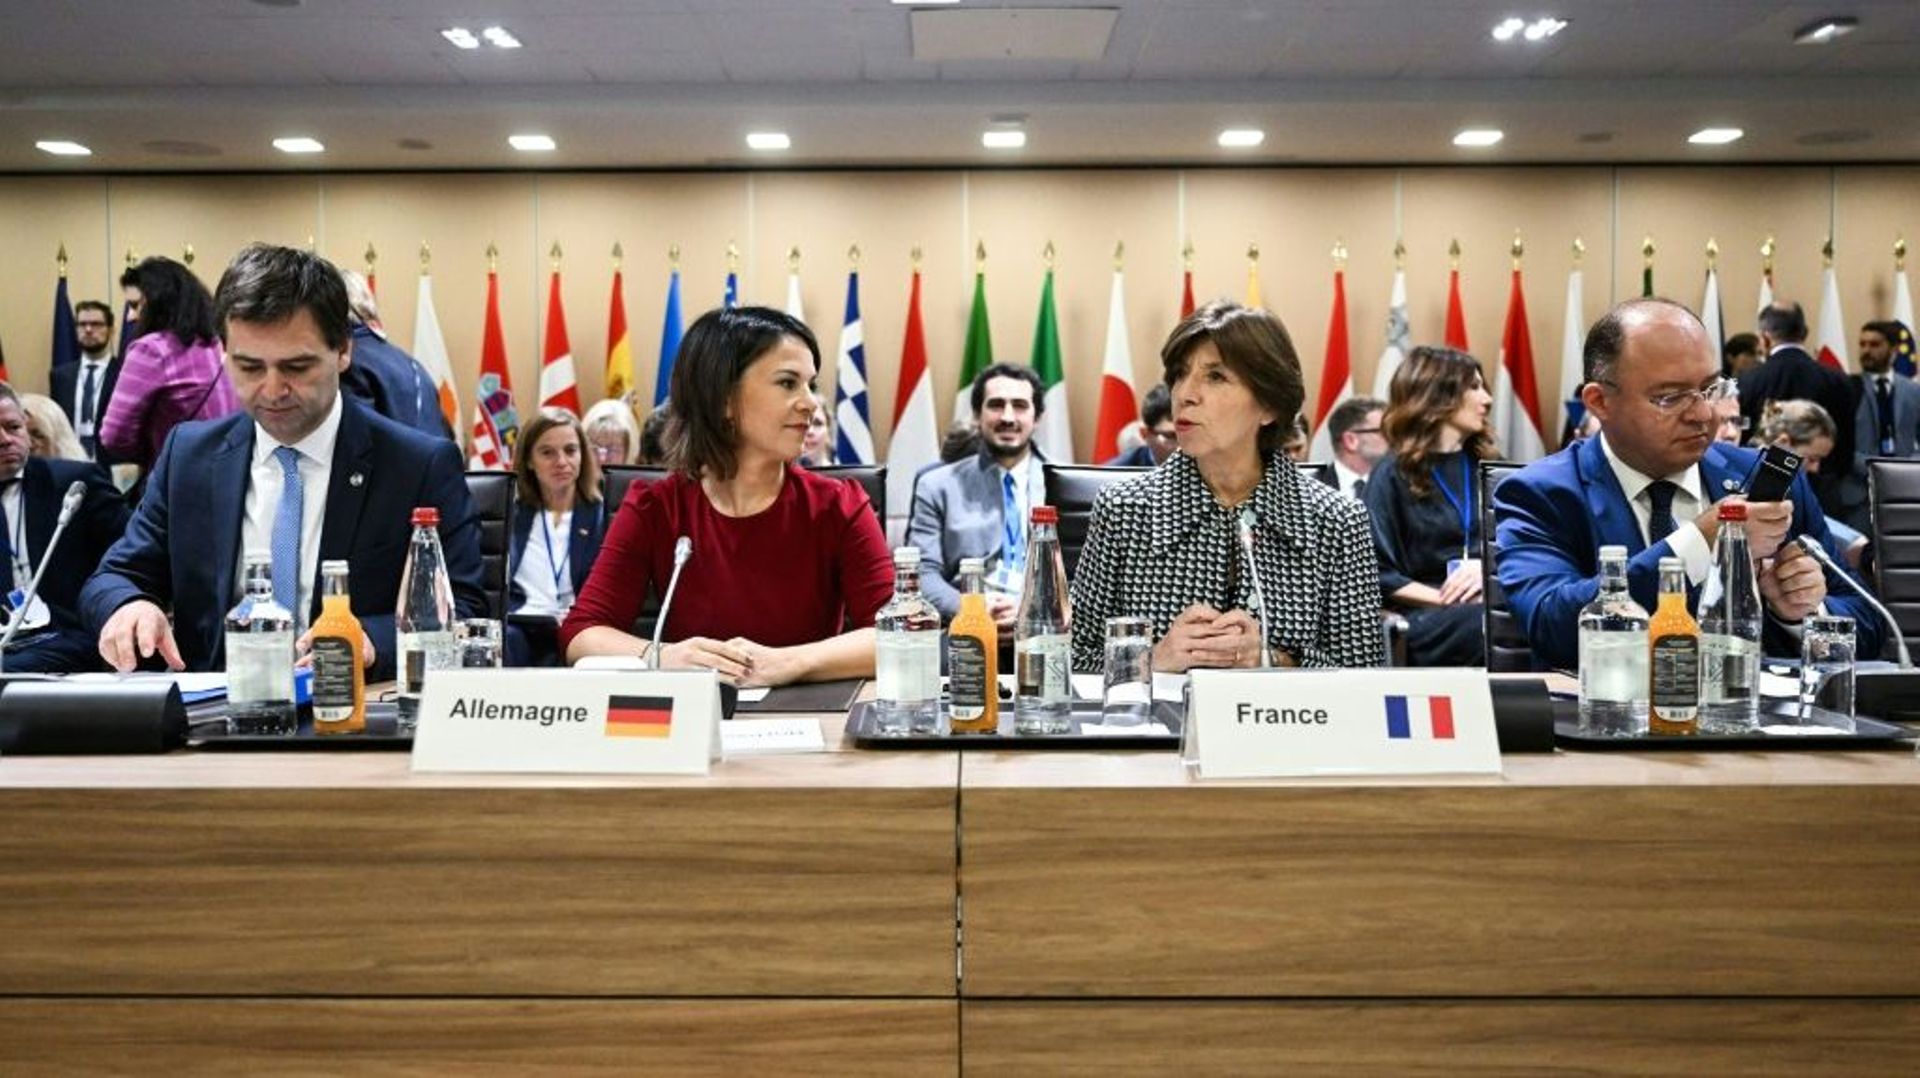 (De gauche à droite) Le ministre moldave des Affaires étrangères, Nicu Popescu, la ministre allemande des Affaires étrangères, Annalena Baerbock, la ministre française des Affaires étrangères et européennes, Catherine Colonna, et le ministre roumain des A